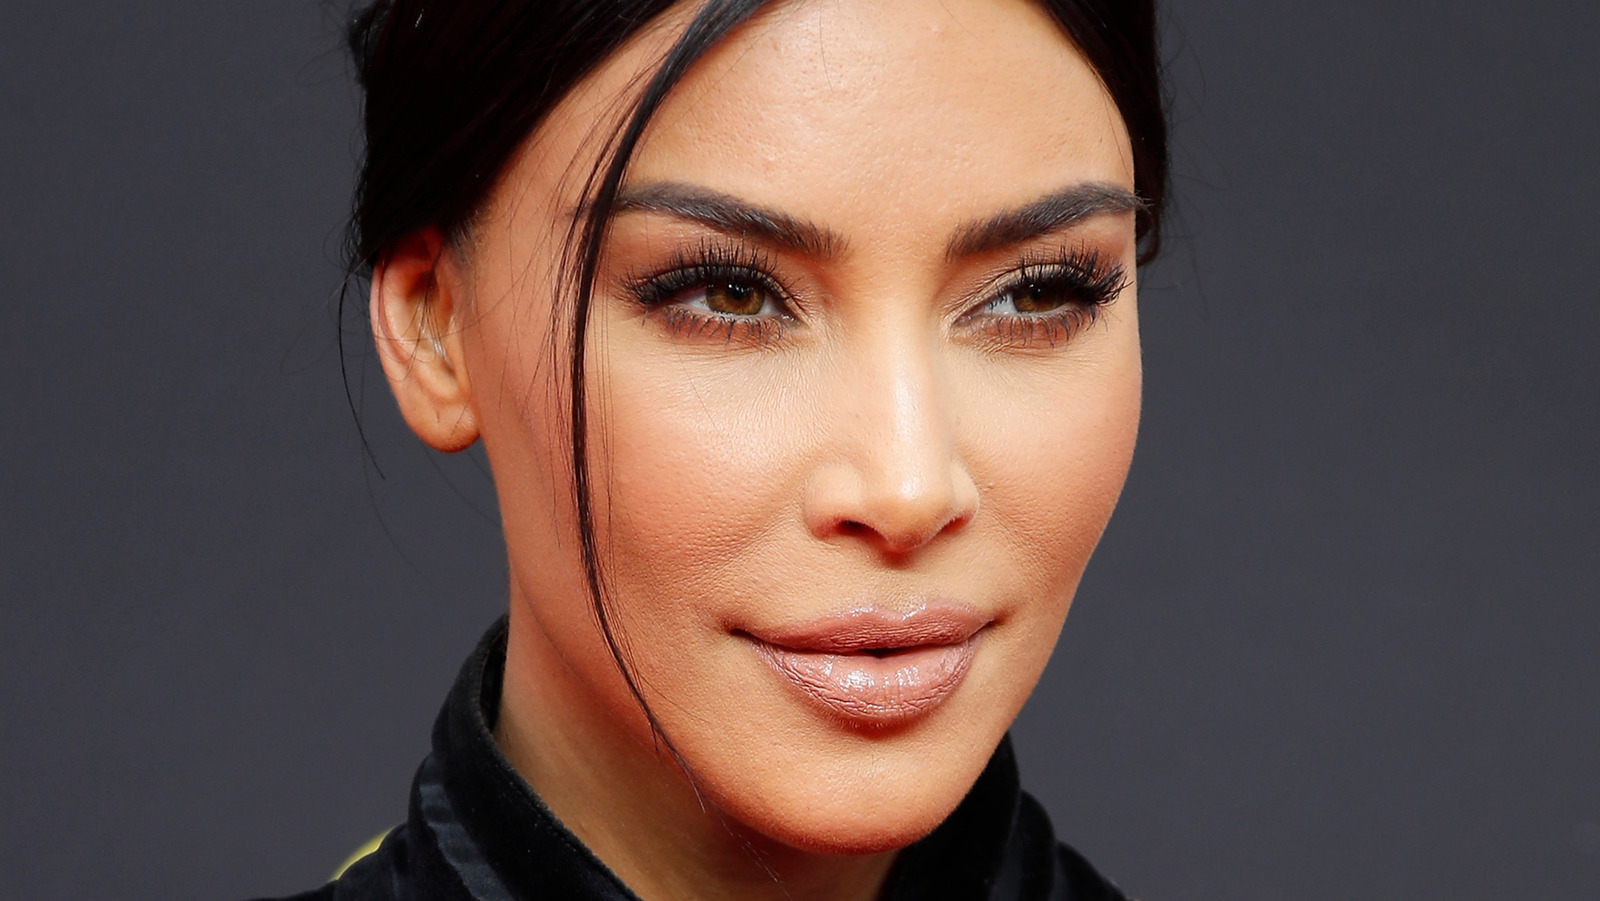 Can Kim Kardashian Convince Men to Buy Shapewear?